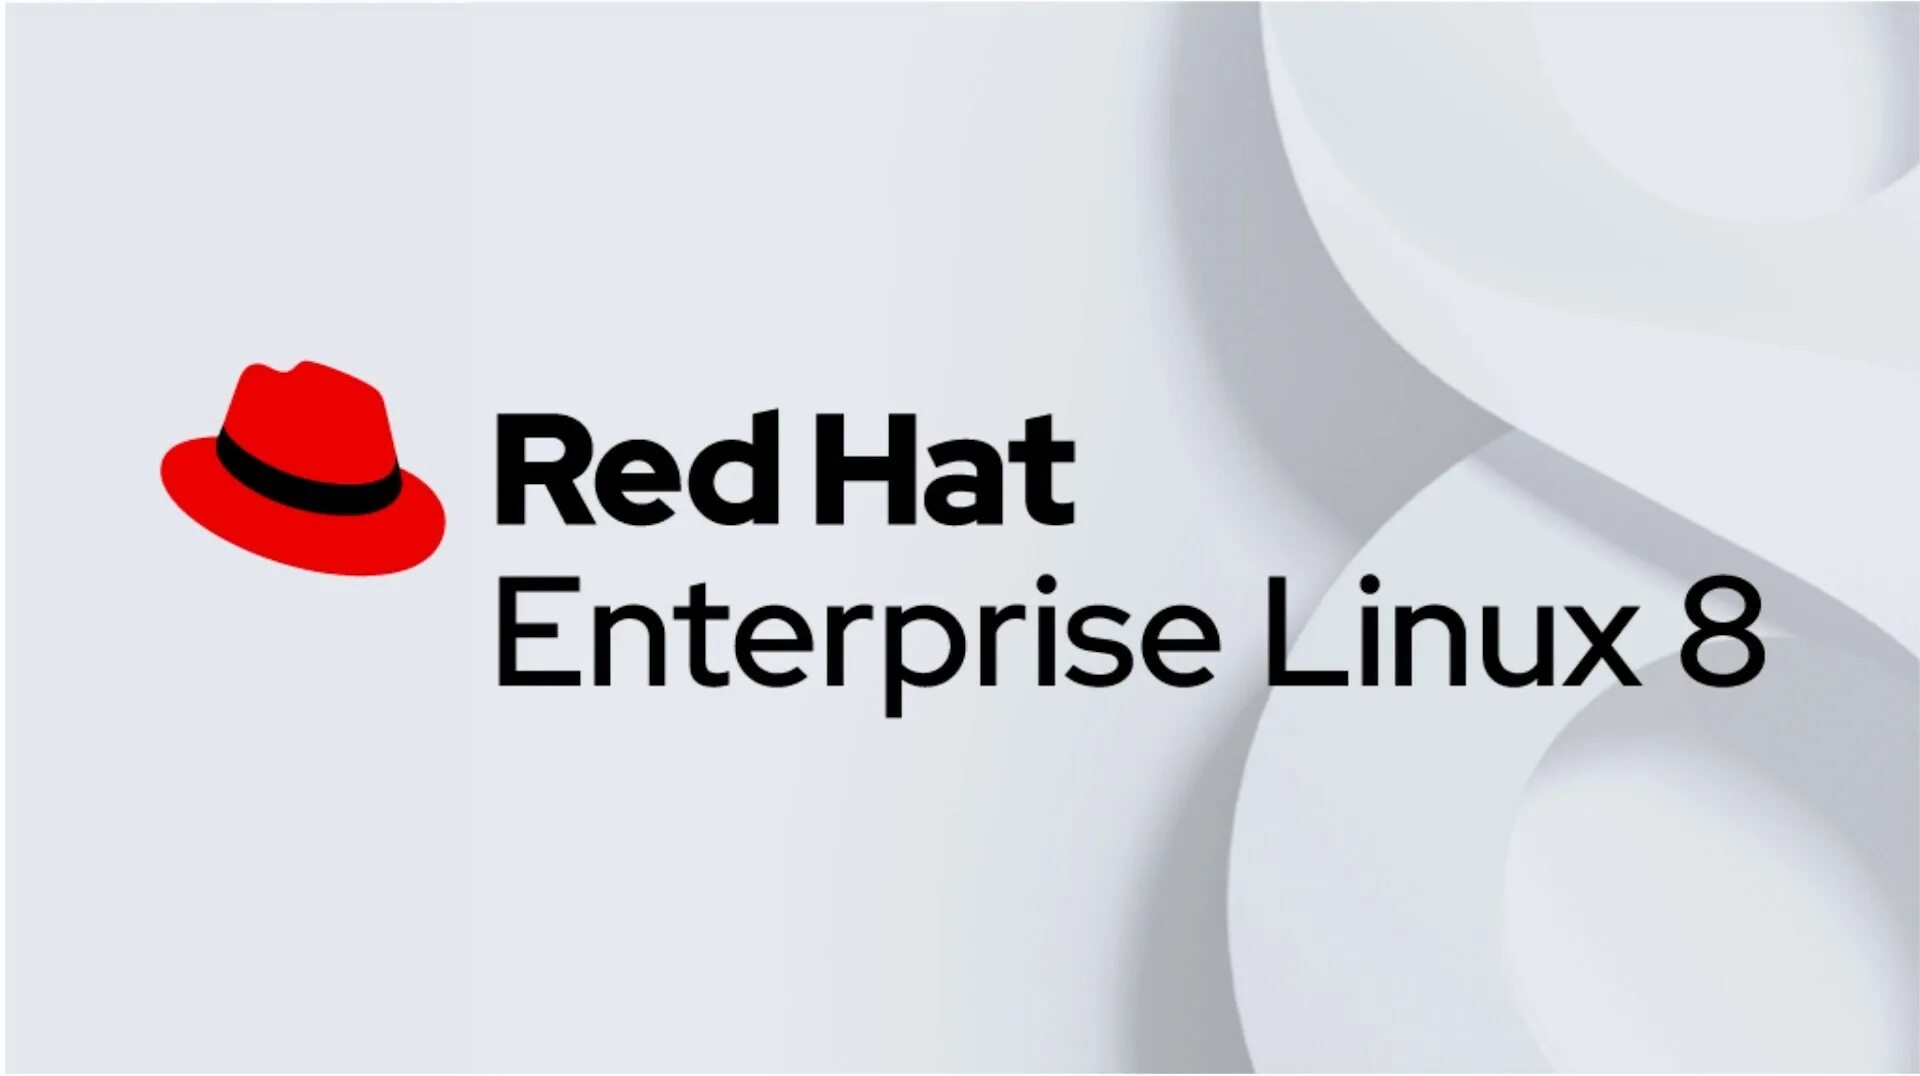 Red hat Enterprise Linux. Red hat Enterprise Linux (RHEL). RHEL 8. Red hat Enterprise Linux 8. Red hat 8